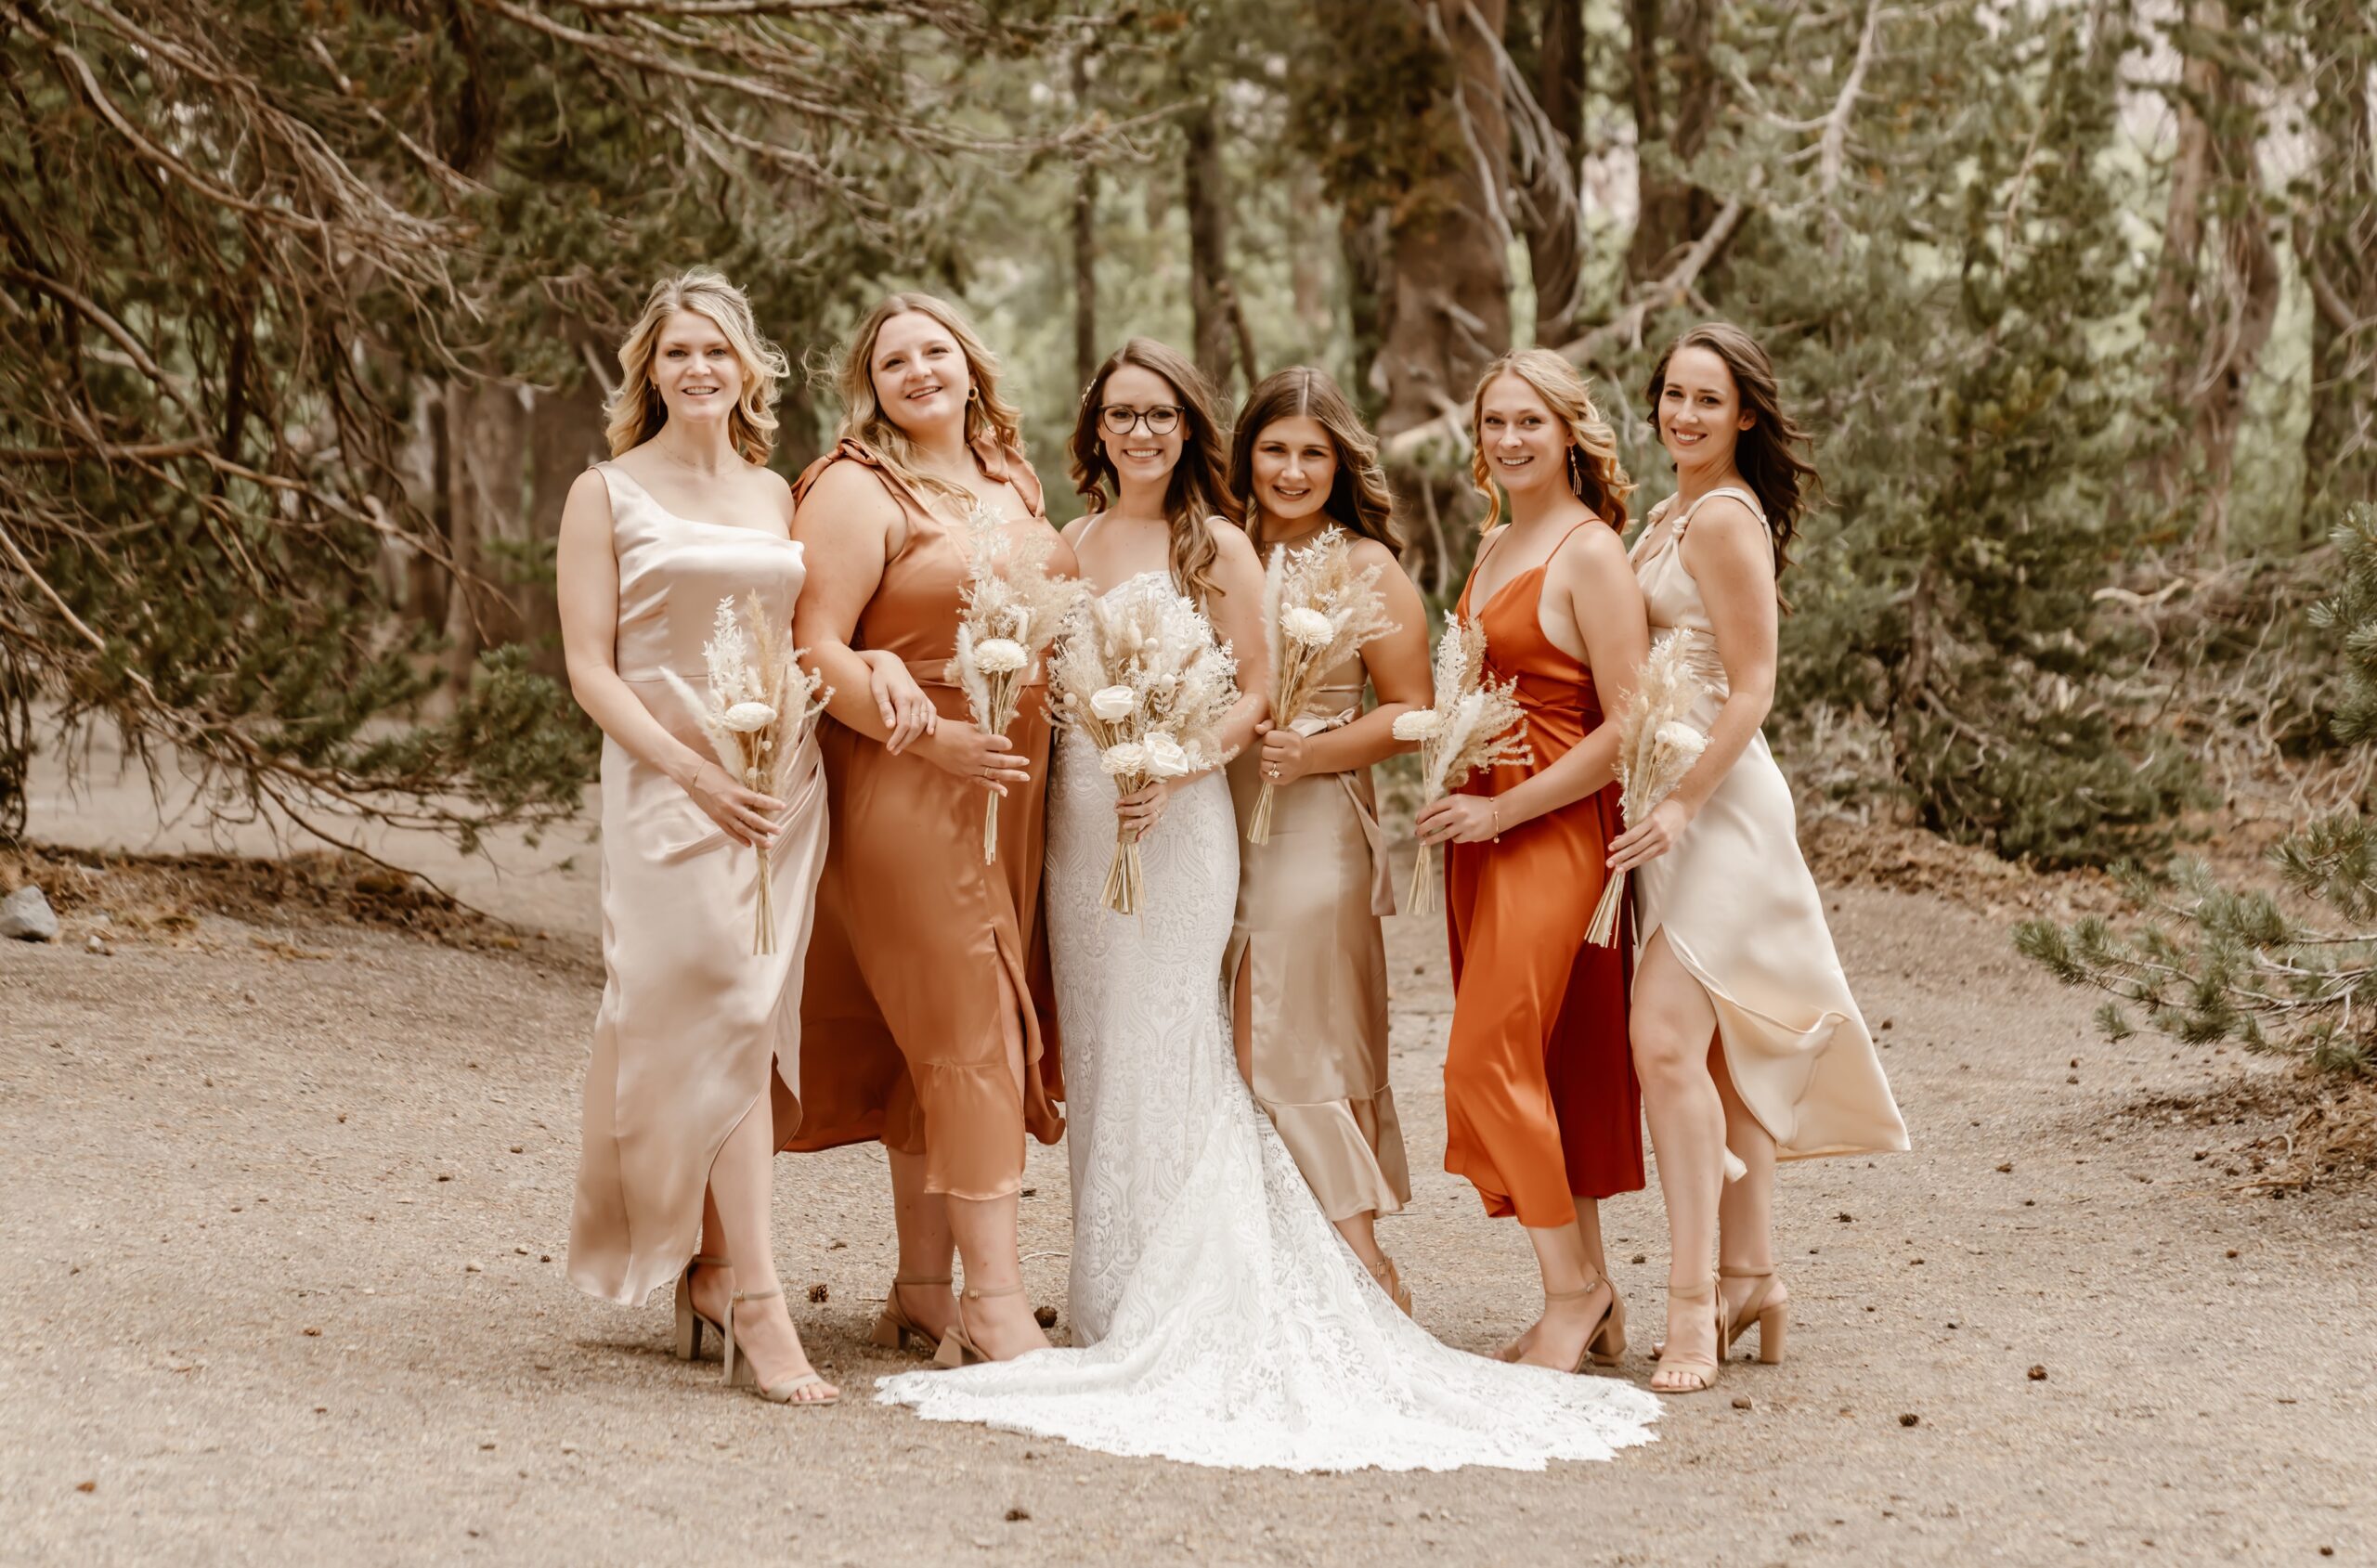 Bridesmaids in shades of orange dresses